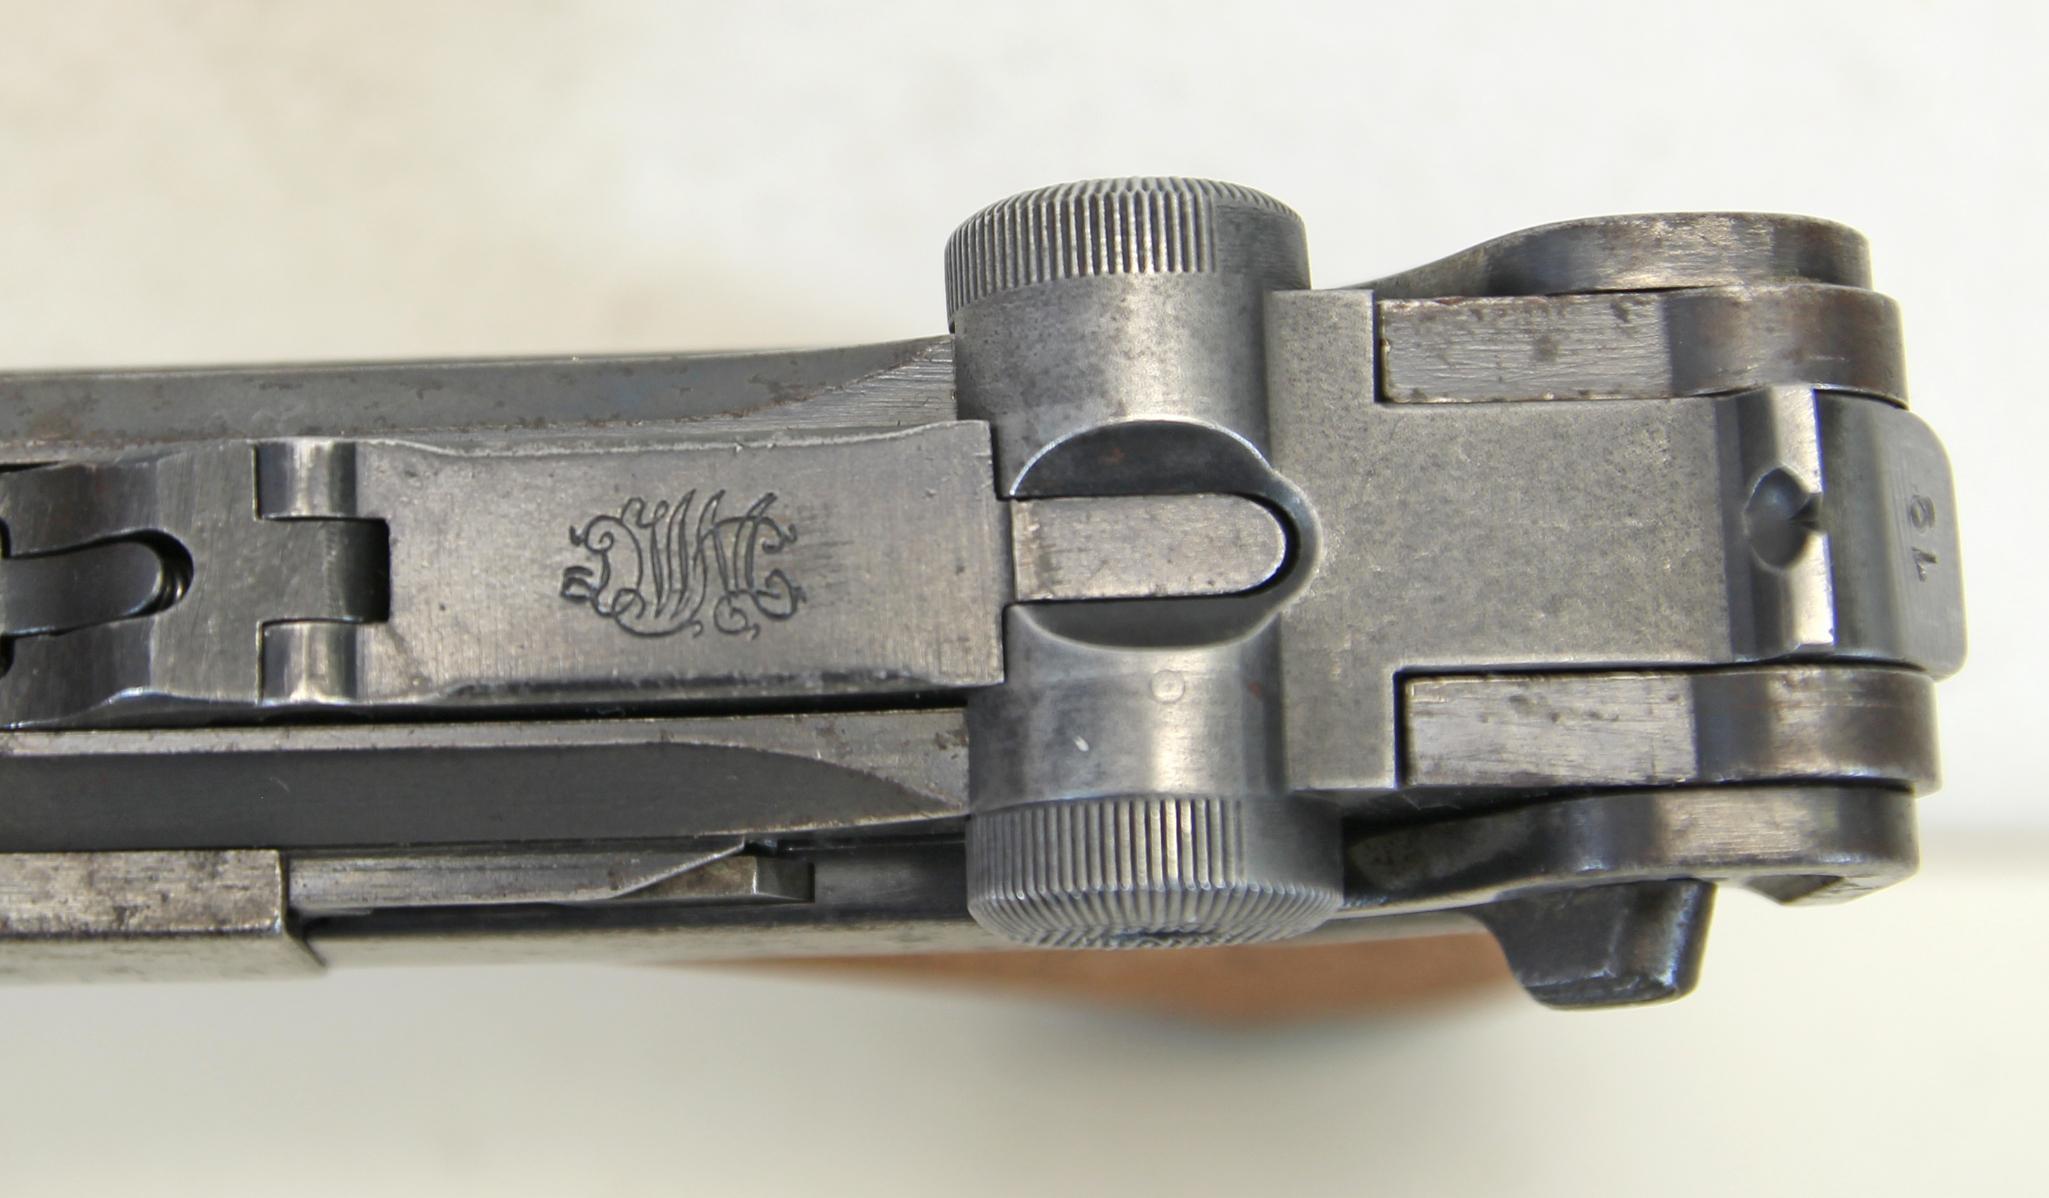 DWM Gesichert German Luger P08 .30 Luger Semi-Auto Pistol Wood Grips Appear Replaced... 1 Original